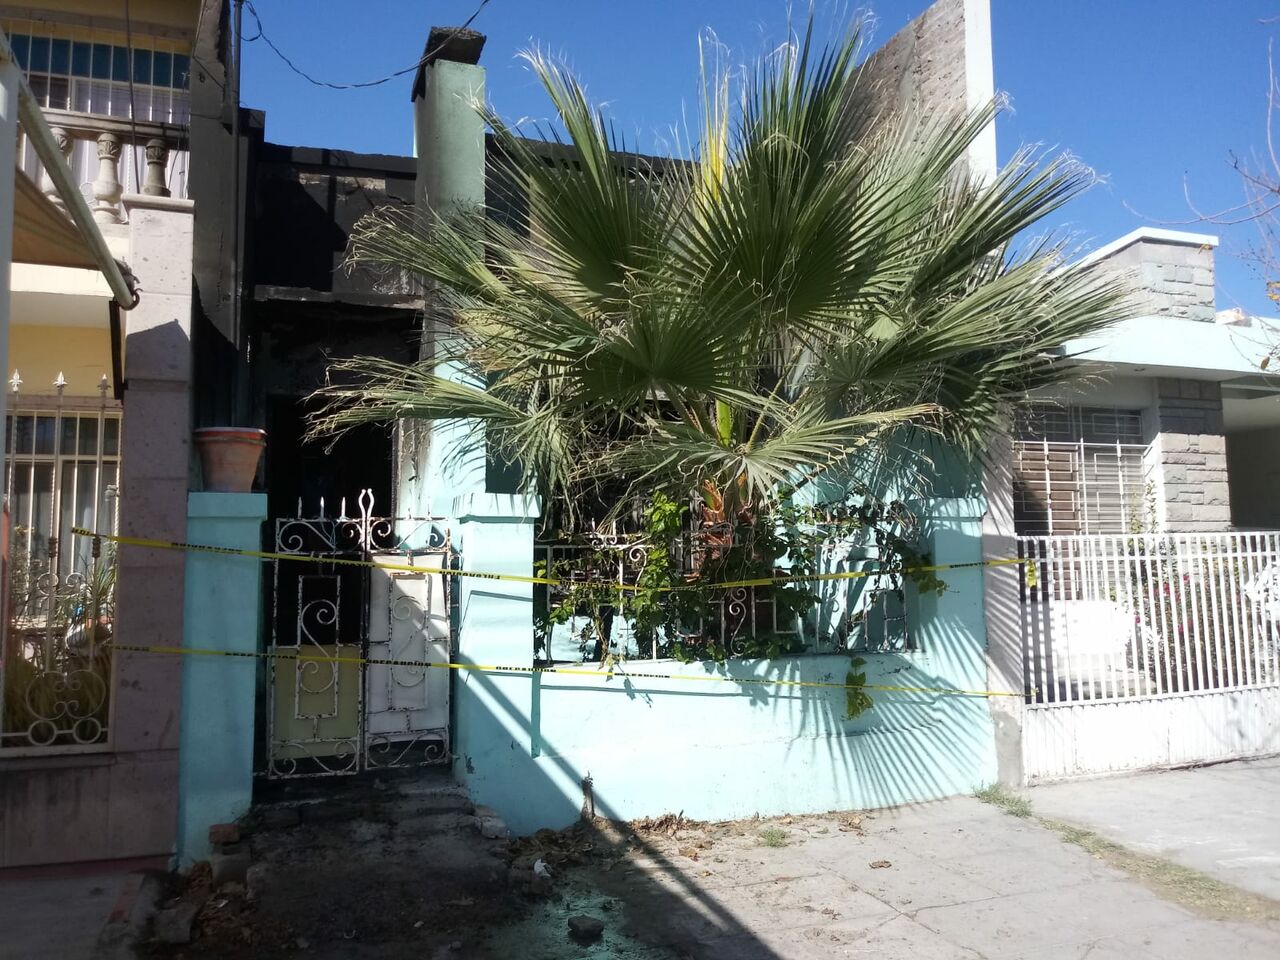 Adulto mayor muere calcinado al interior de su vivienda en Torreón